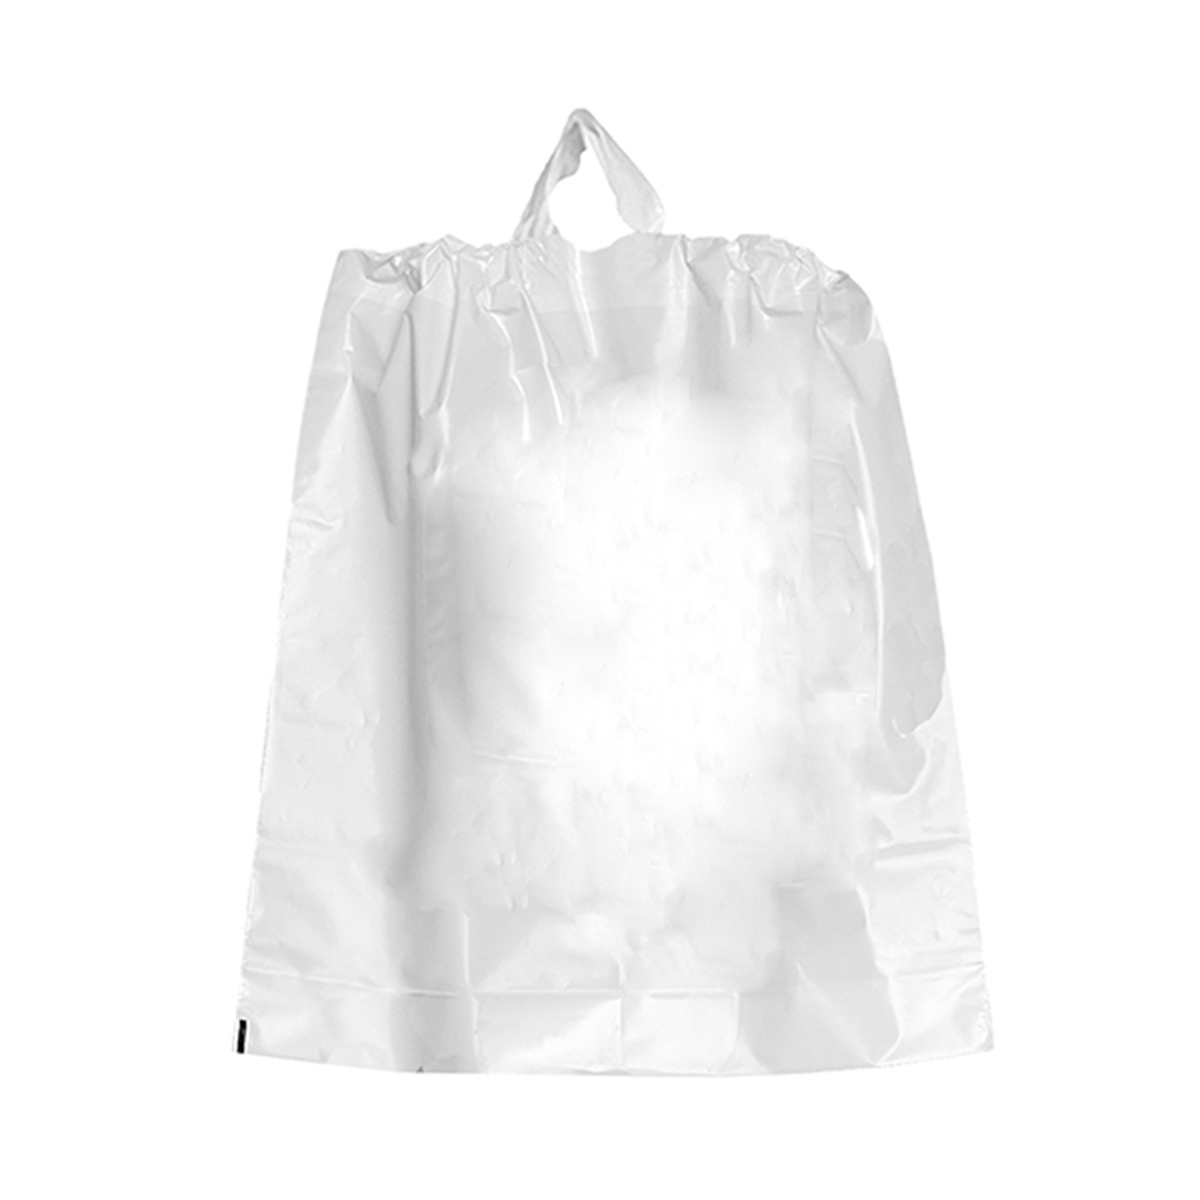 White Poly Draw Bag 18x20x4